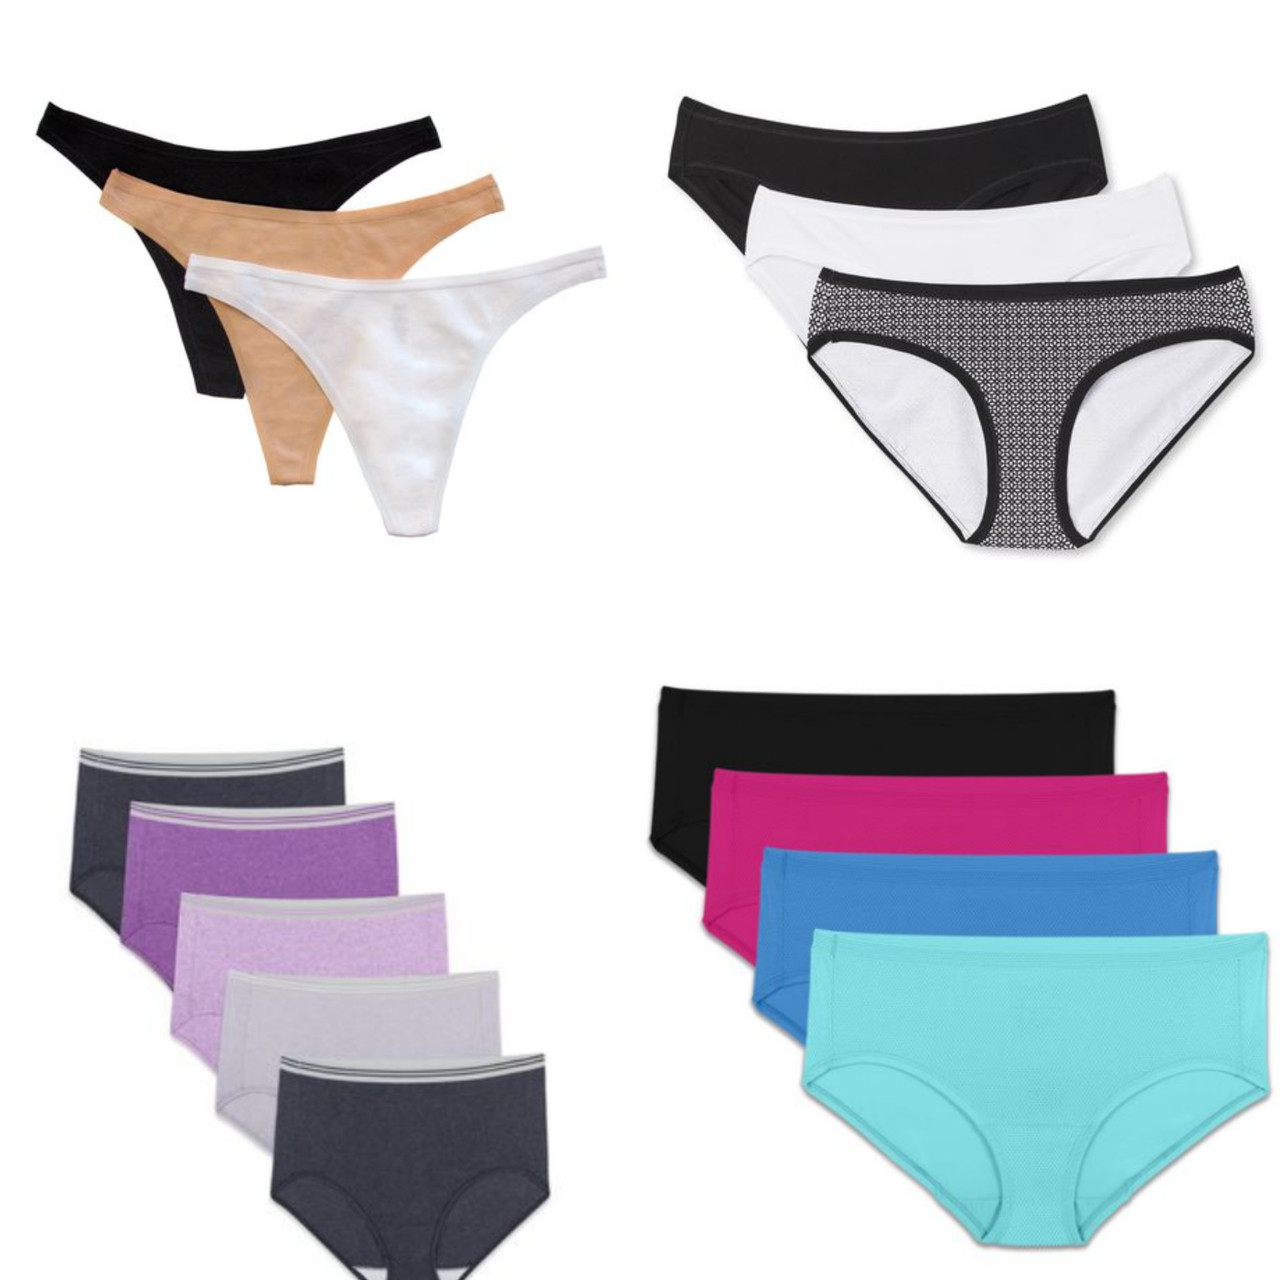 Maidenform Boyshorts Underwear Panty, Women's Cotton Stretch Tagless, 3 Pack